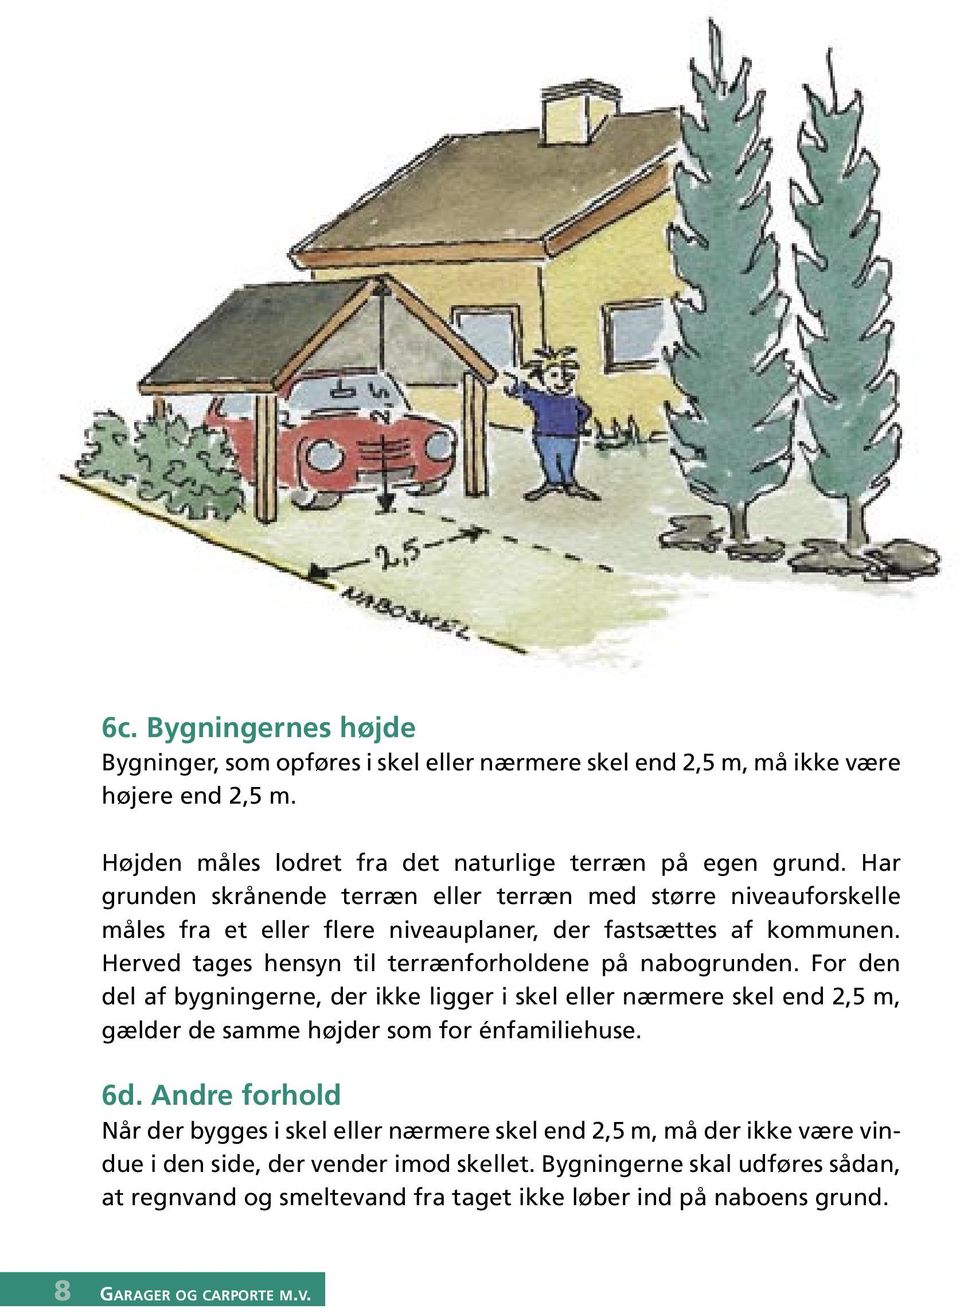 Garager og carporte m.v. Bygningsreglement for småhuse PDF Gratis download